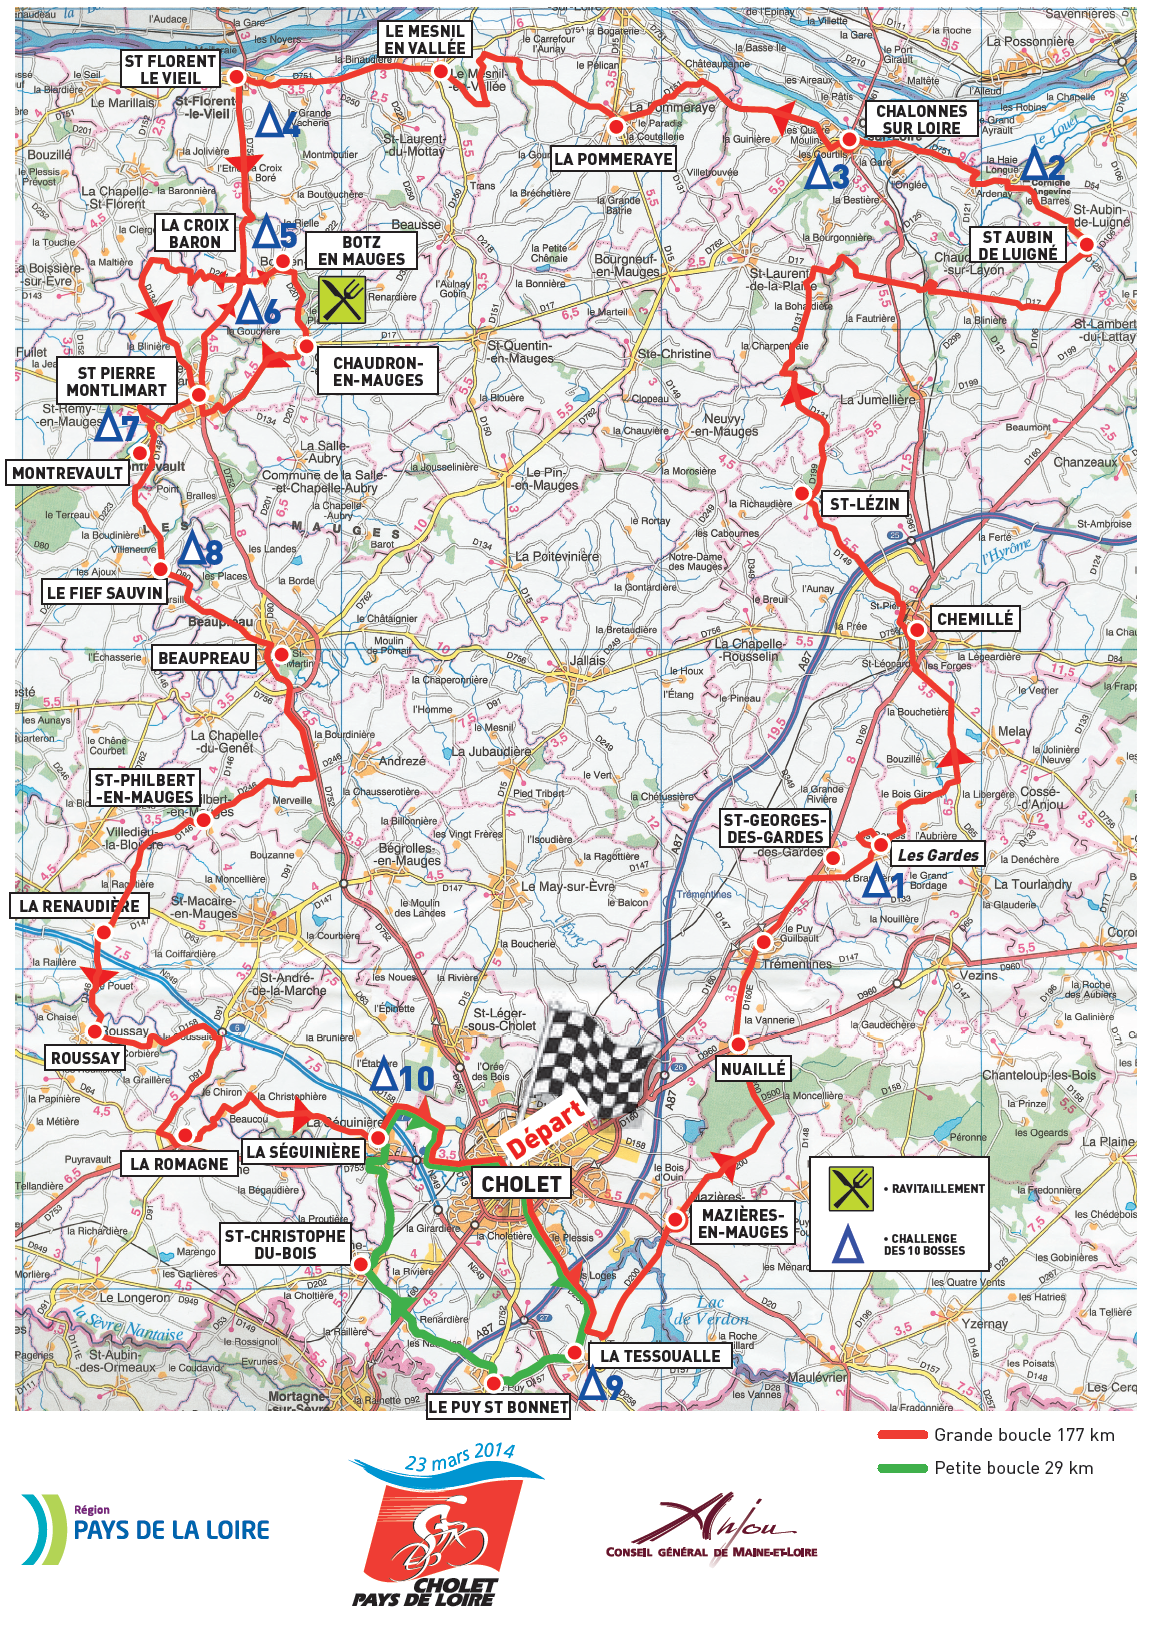 Streckenverlauf Cholet - Pays De Loire 2014